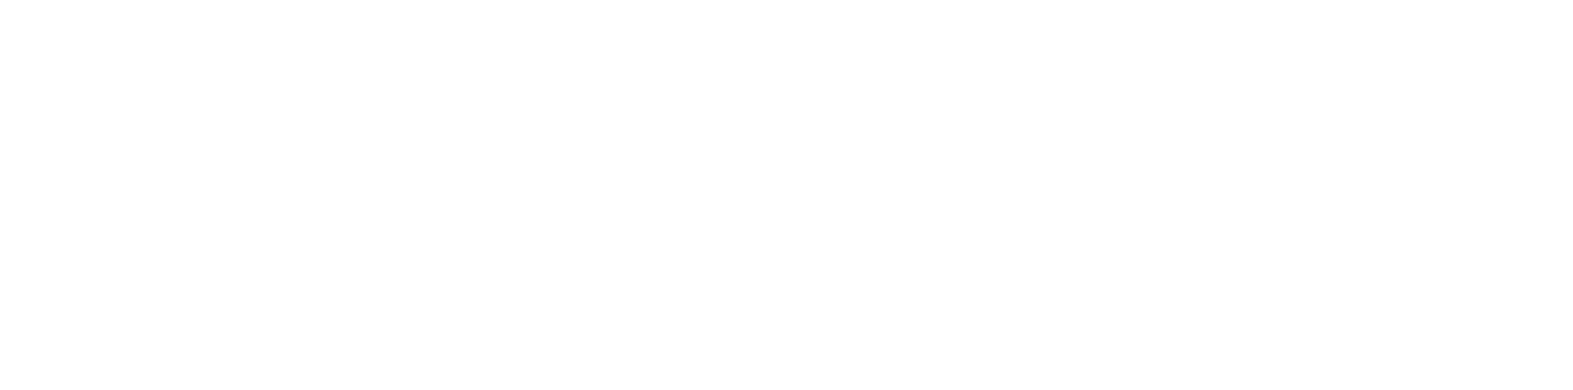 Newcastle council logo